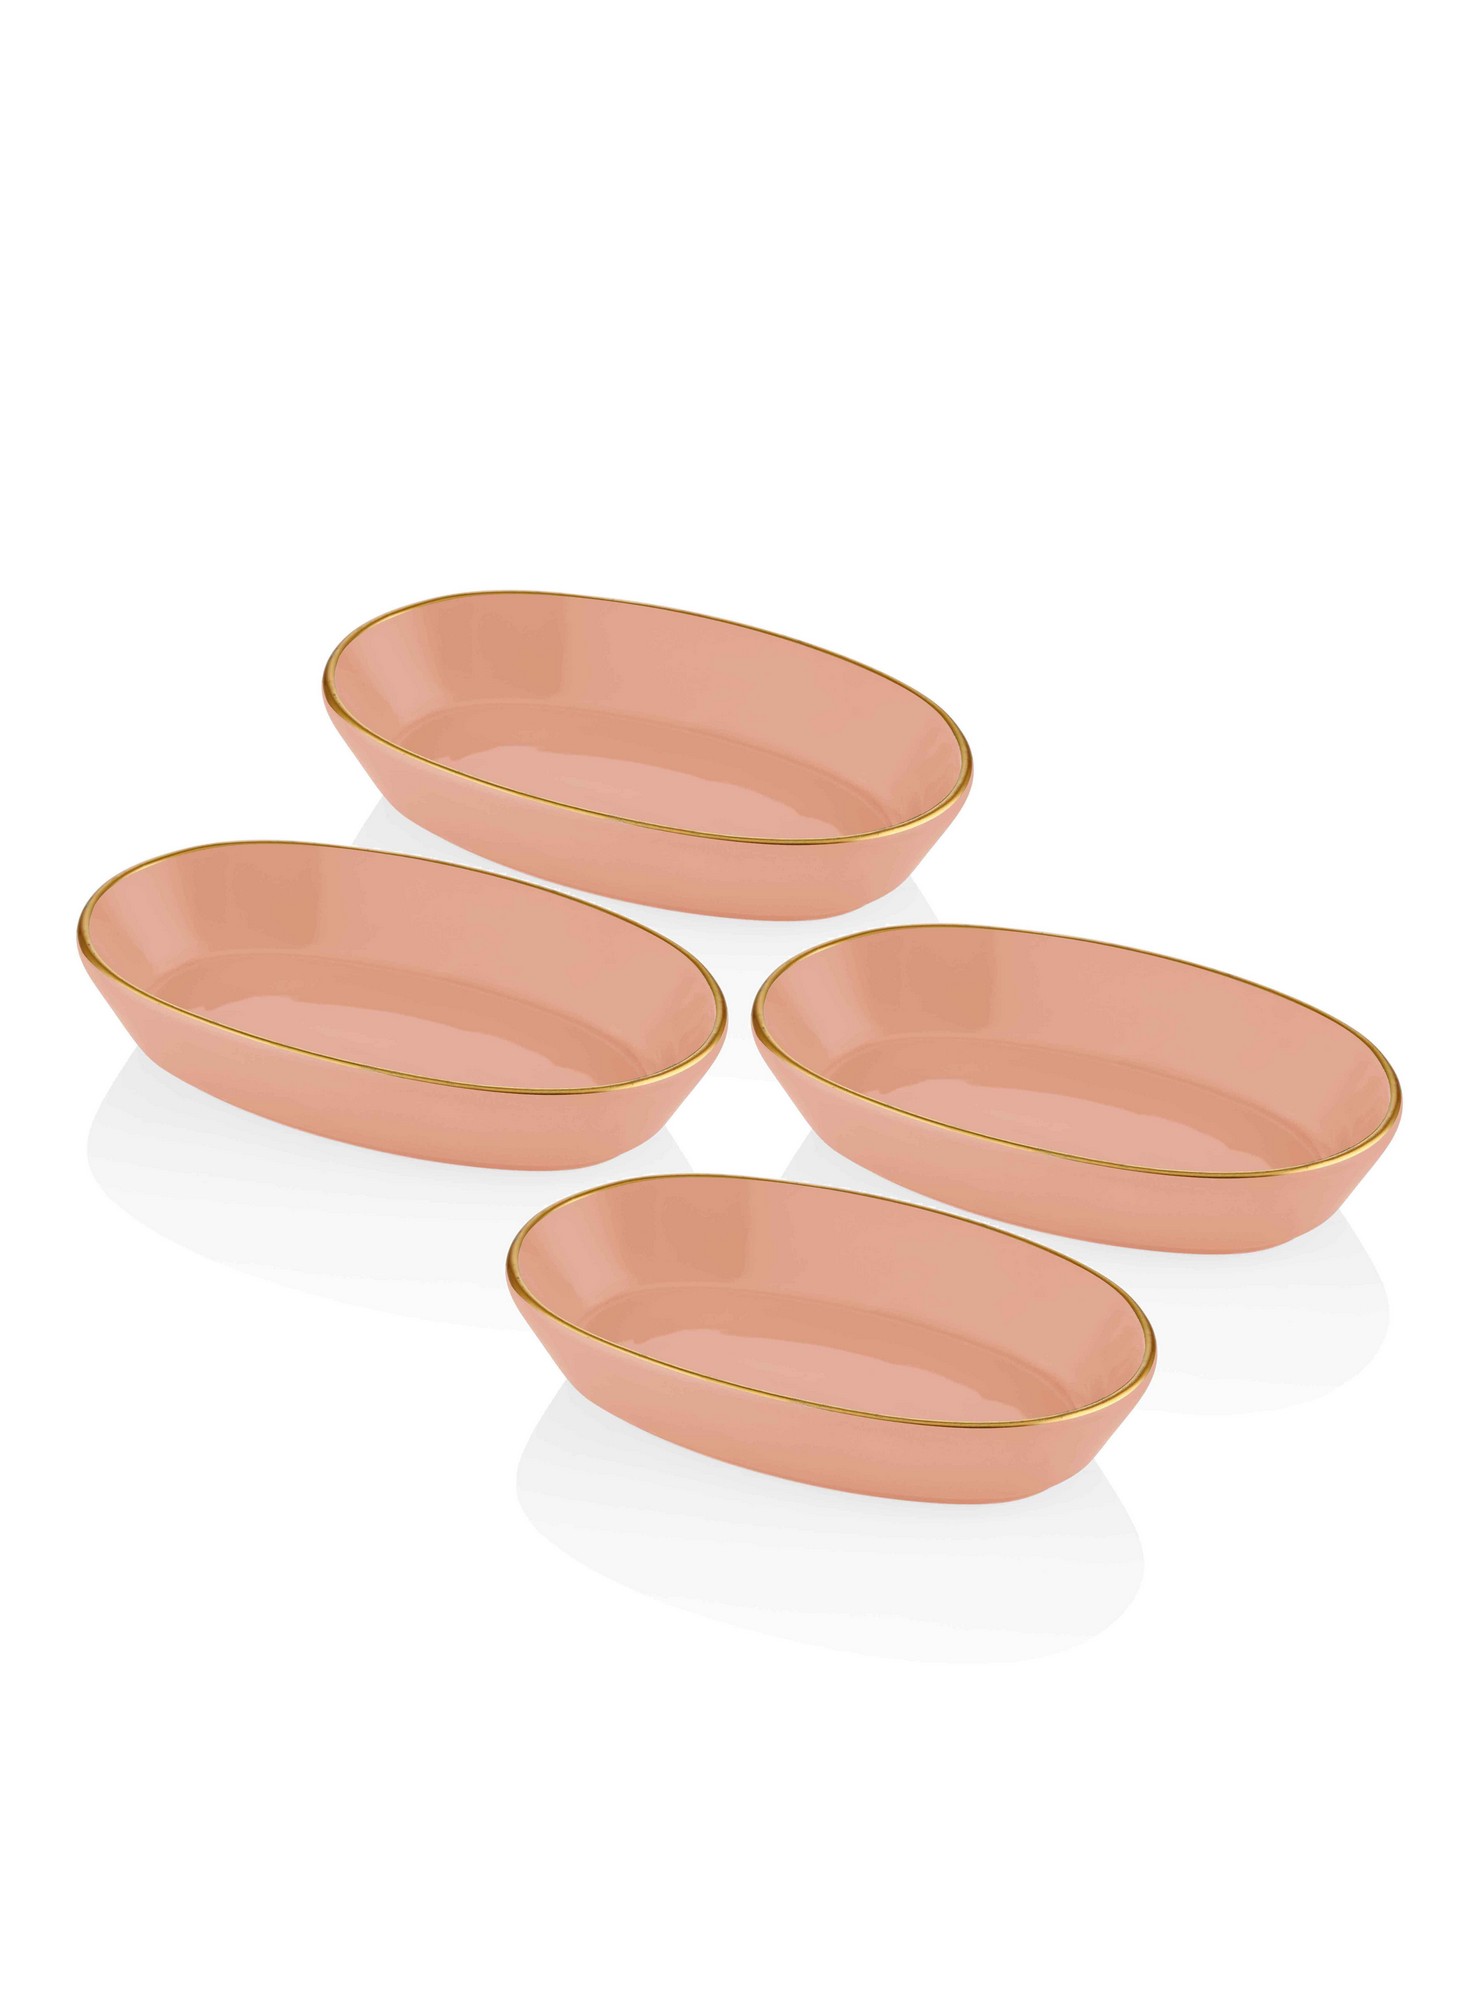 Clio Ceramic 4 piece serving dish set Gold and Peach